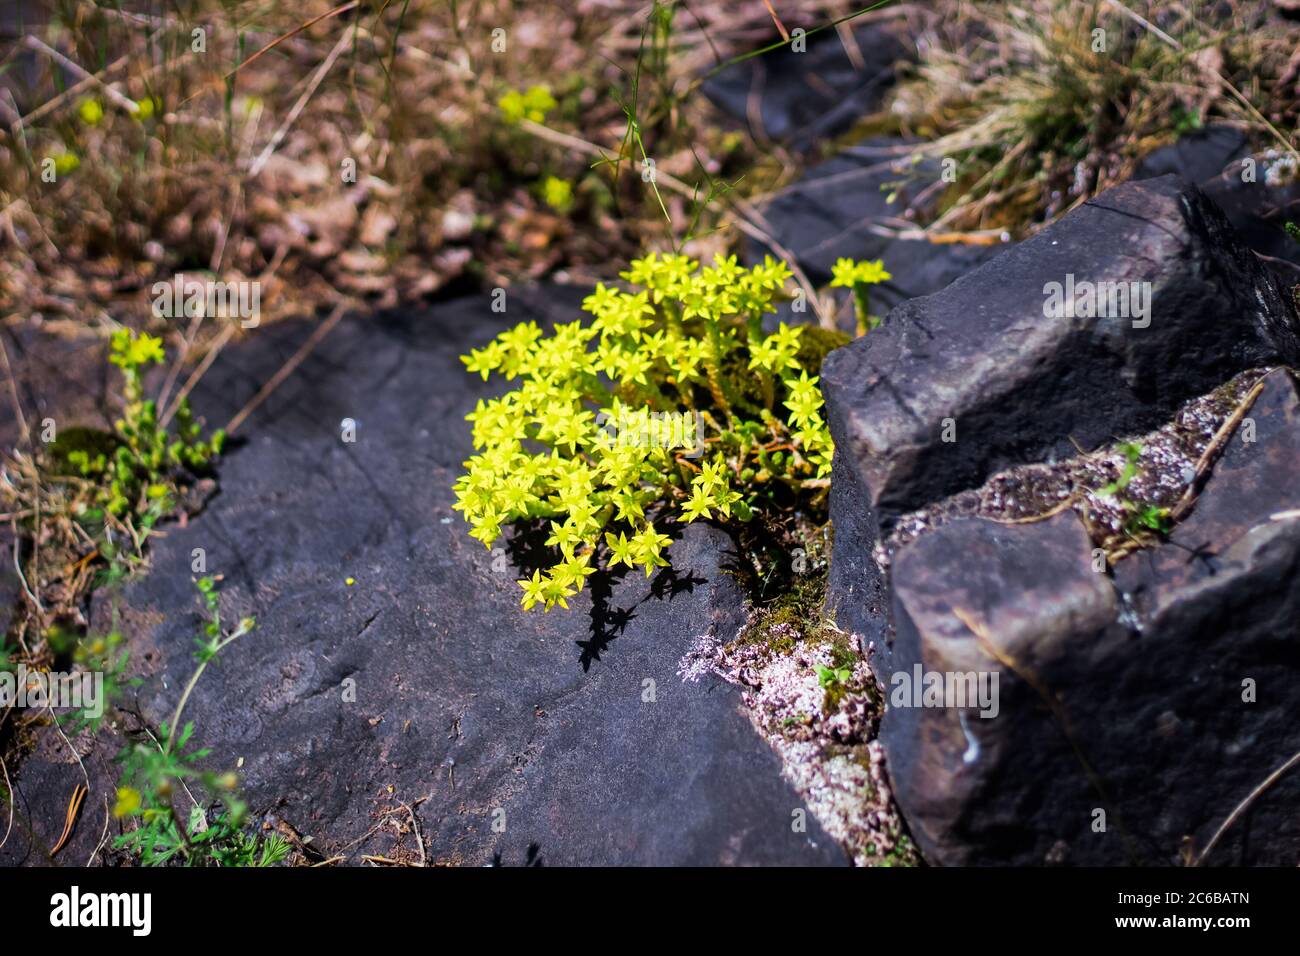 La fleur de montagne jaune pousse parmi les pierres. Bush avec de petites fleurs jaunes de montagne sur un fond de pierres. Banque D'Images